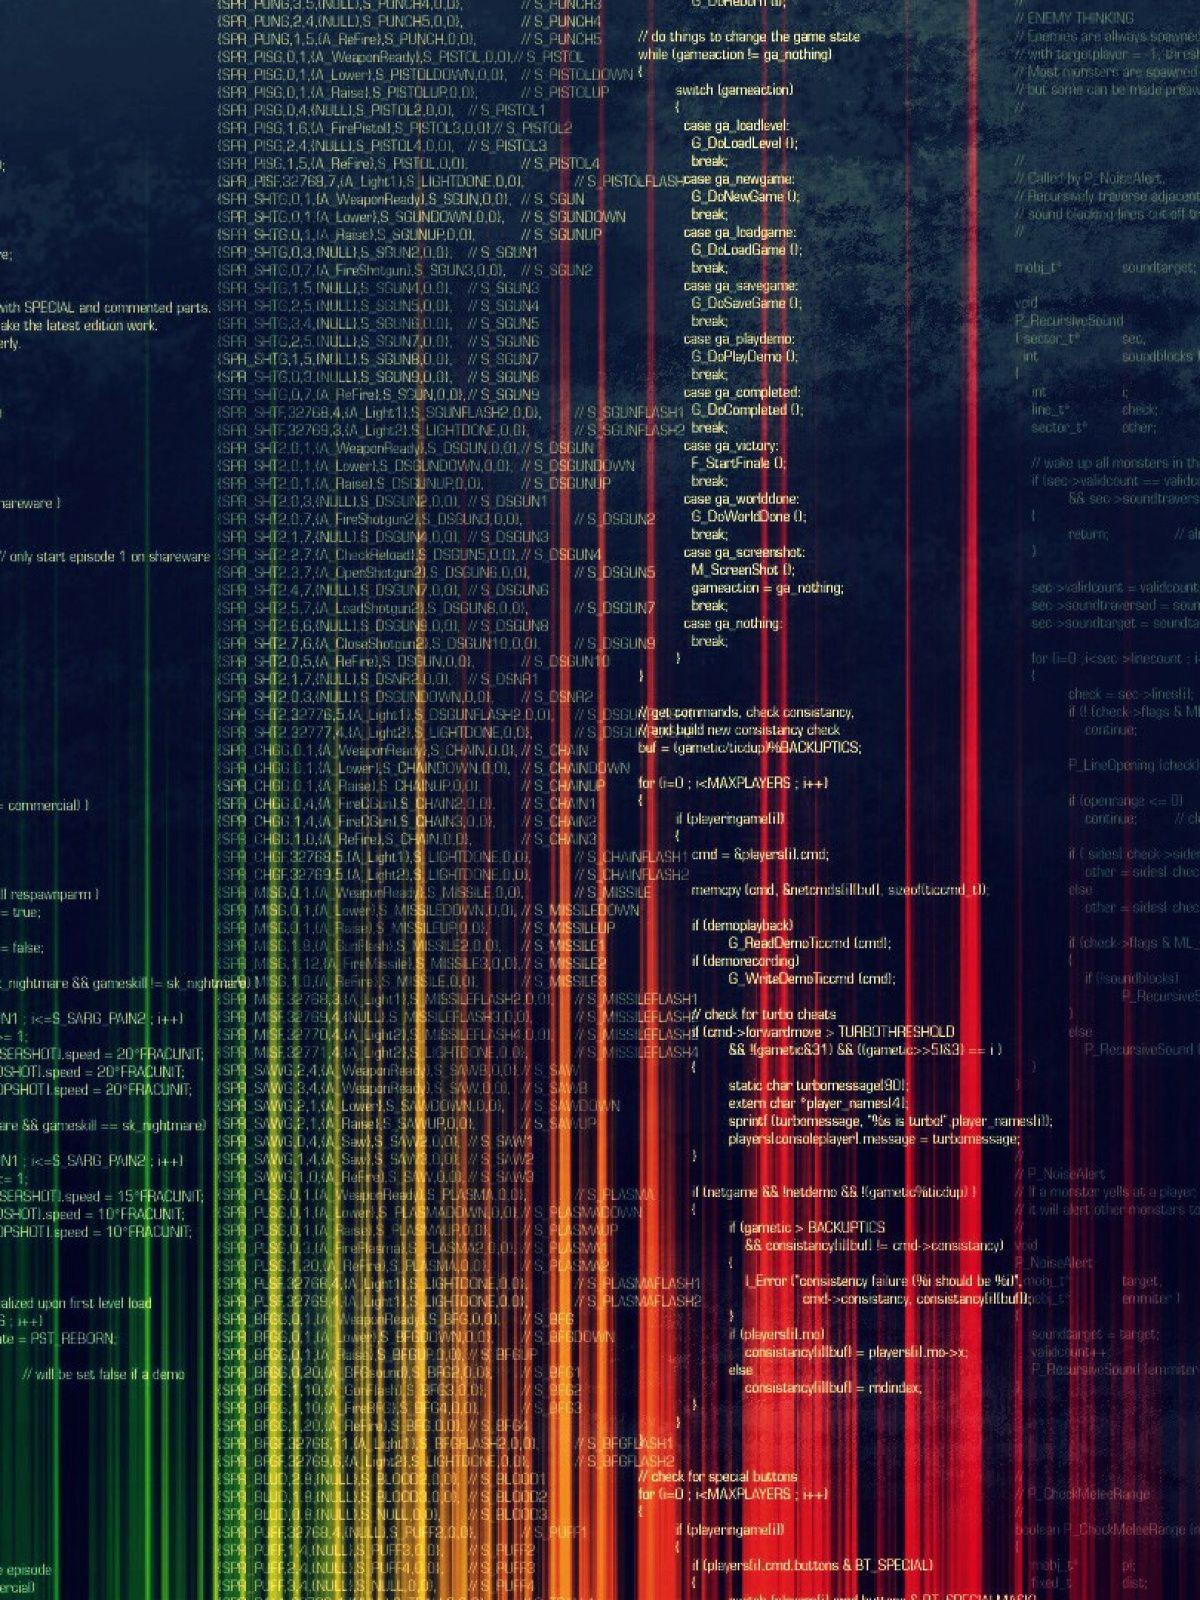 Code phone wallpaper» HD Wallpapers